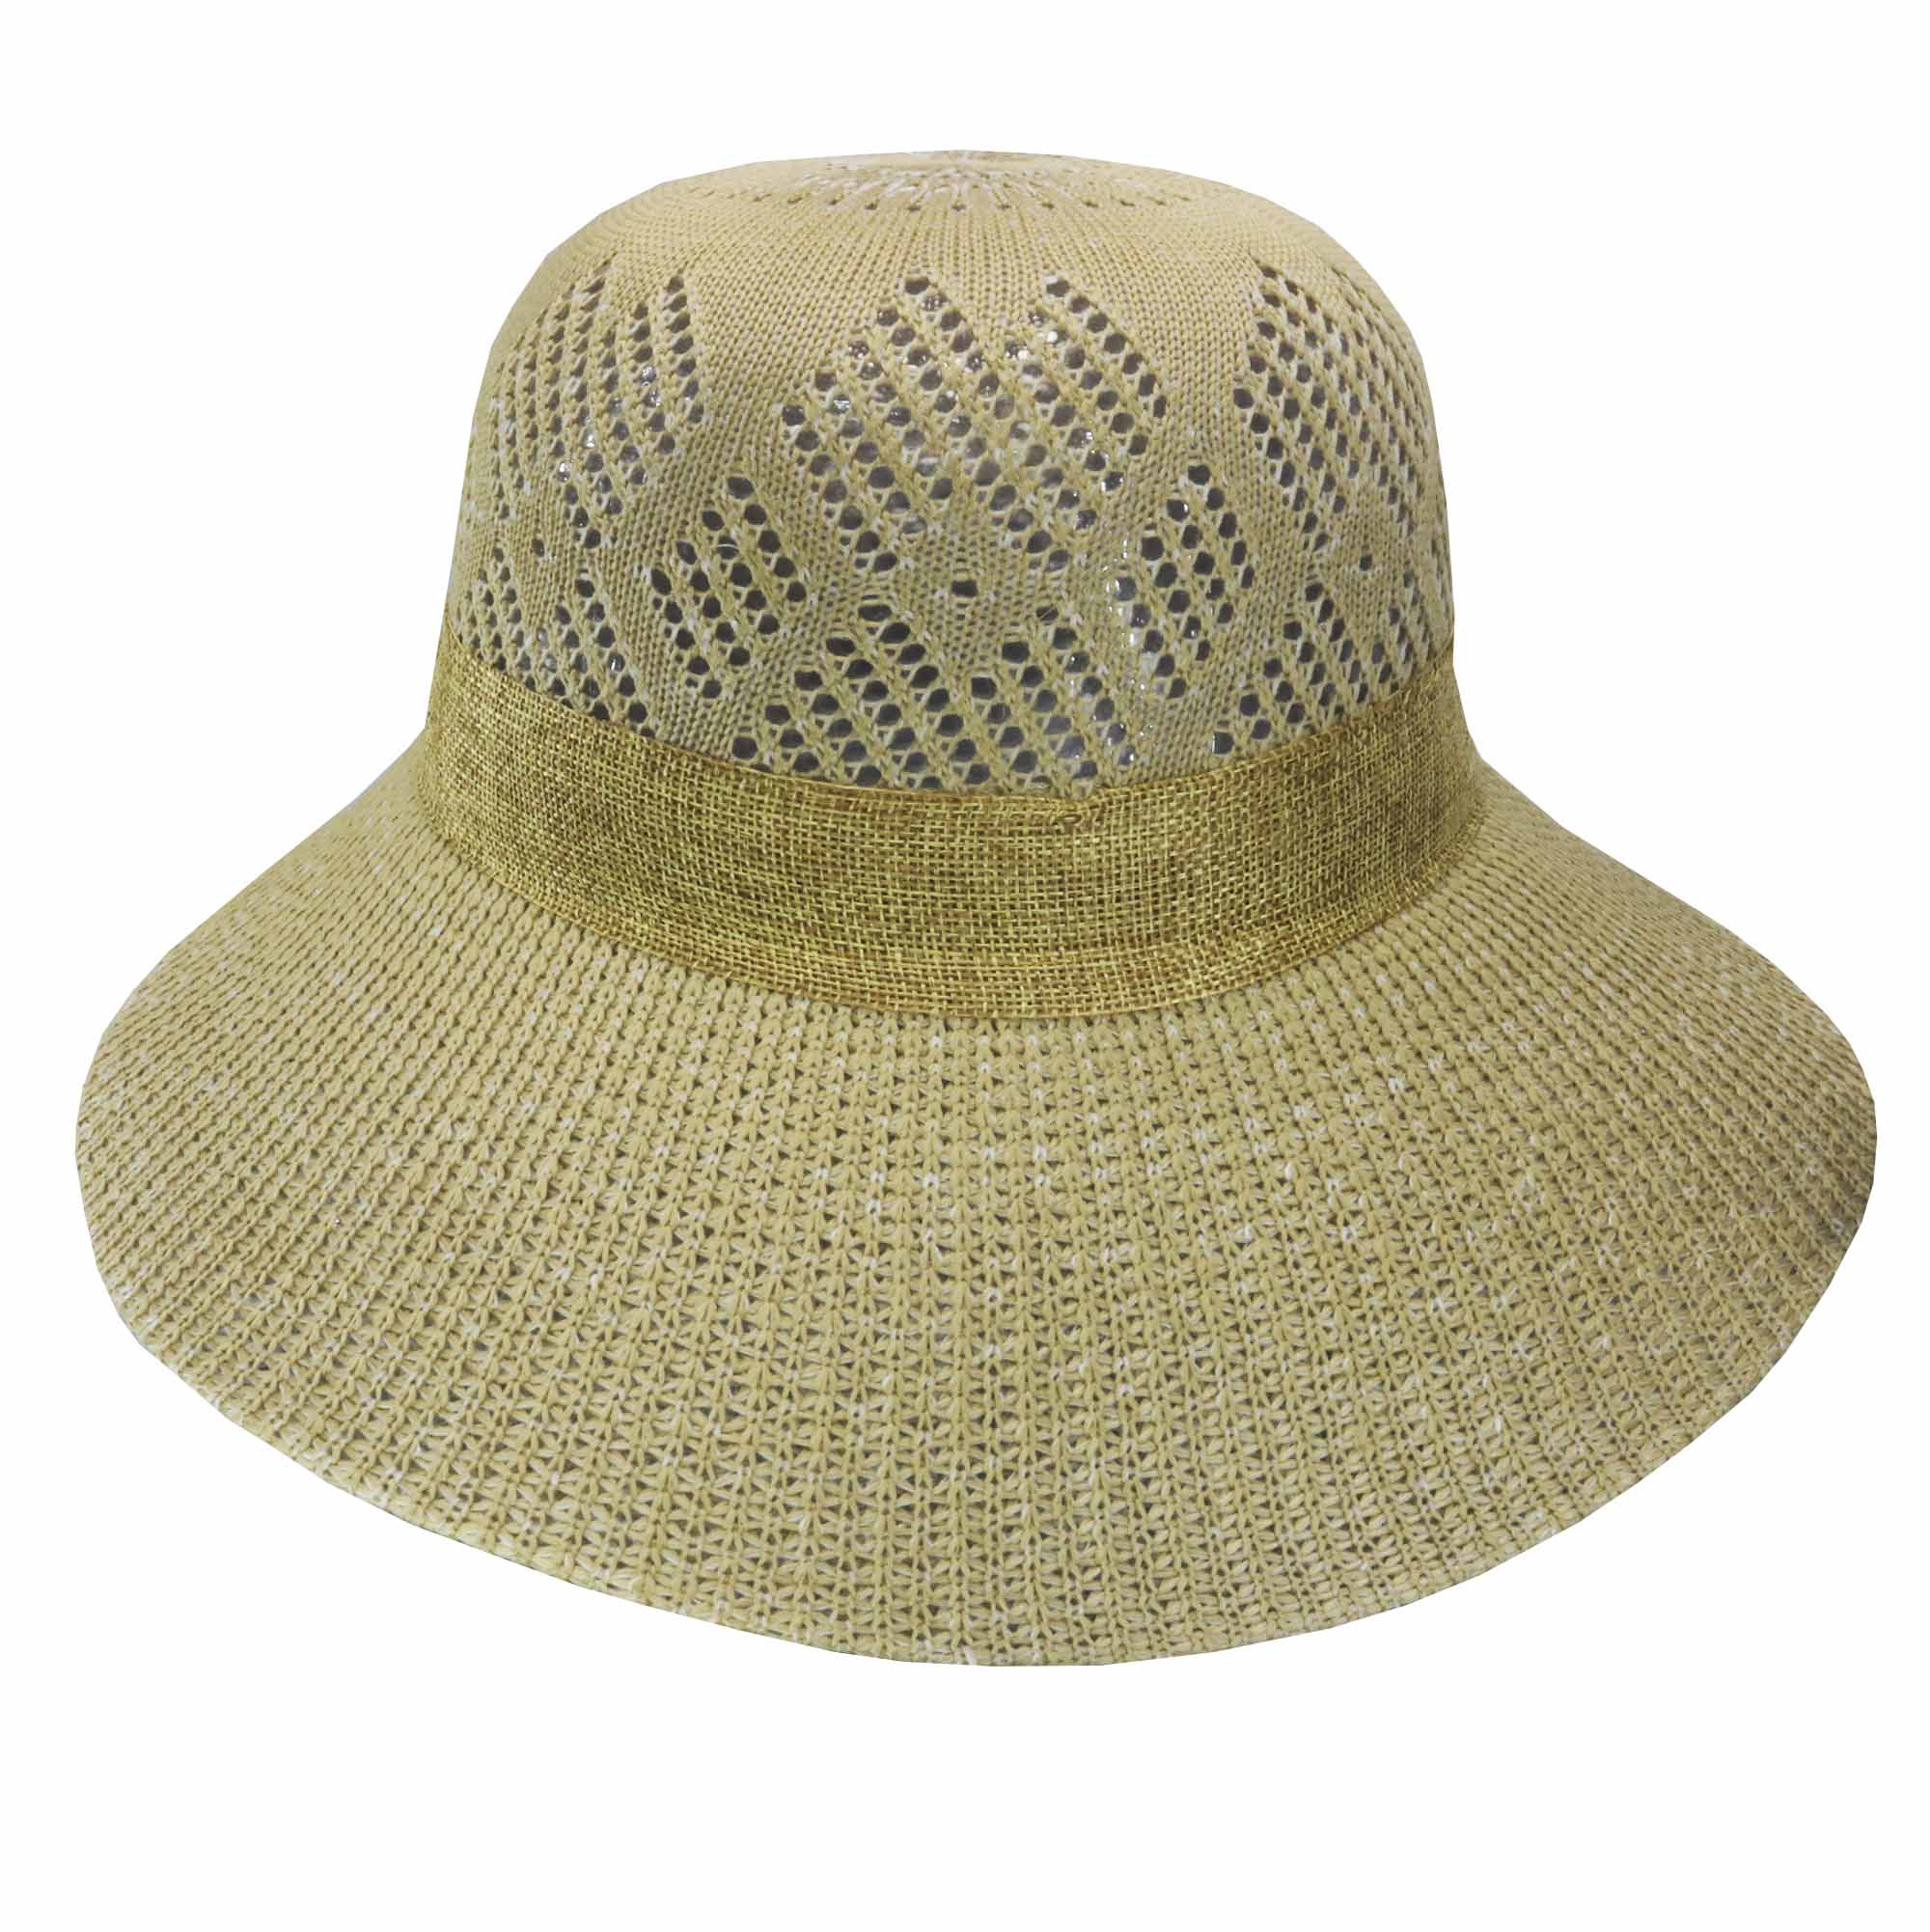 Sombrero capelina ala ancha con cinta